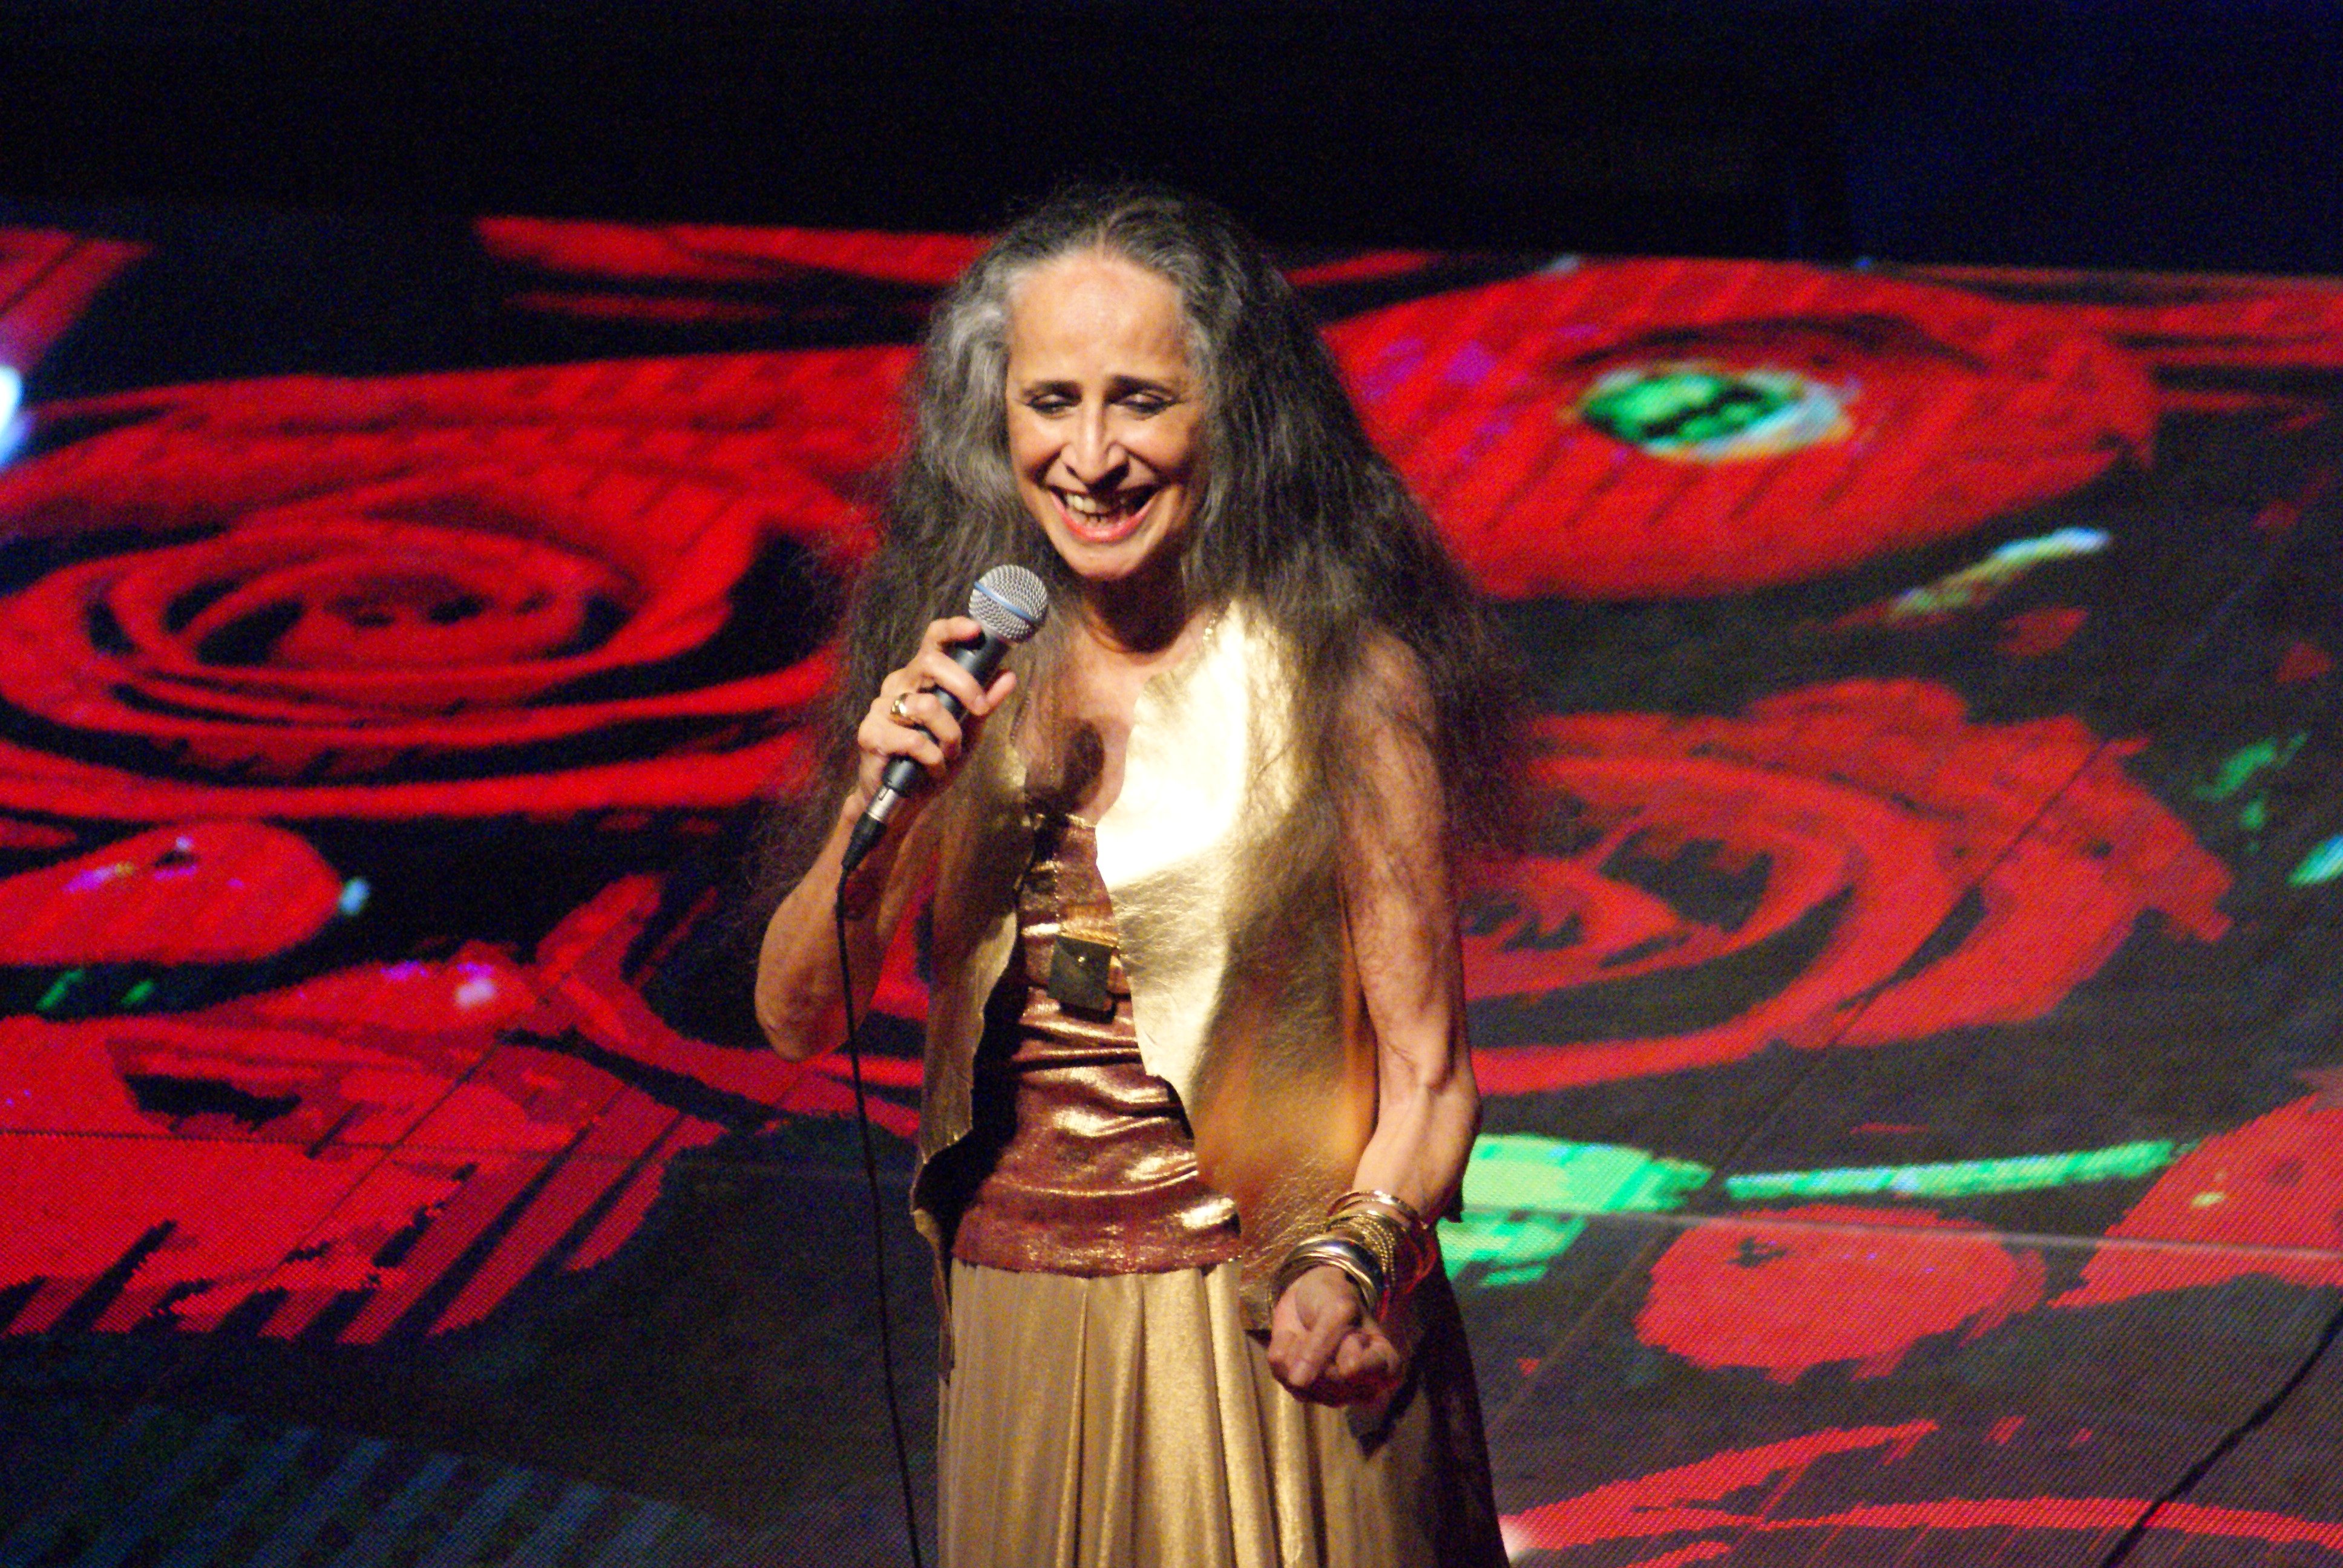 Maria Bethânia no palco cantando e sorrindo